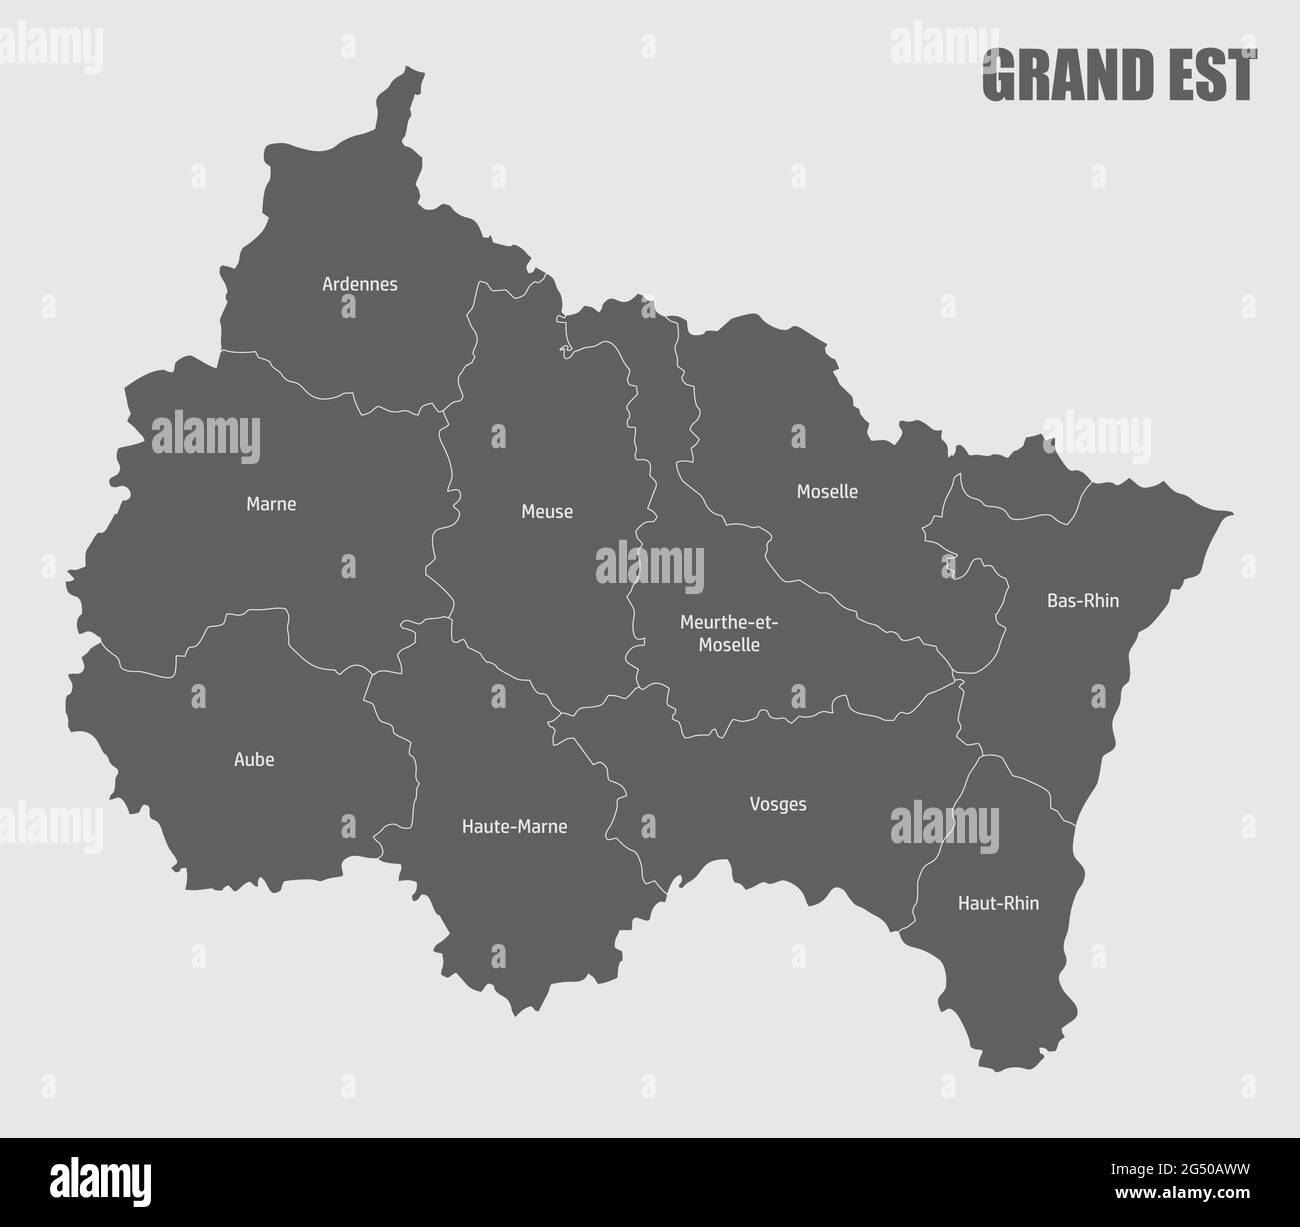 Carte administrative du Grand est divisée en départements avec labels, France Illustration de Vecteur